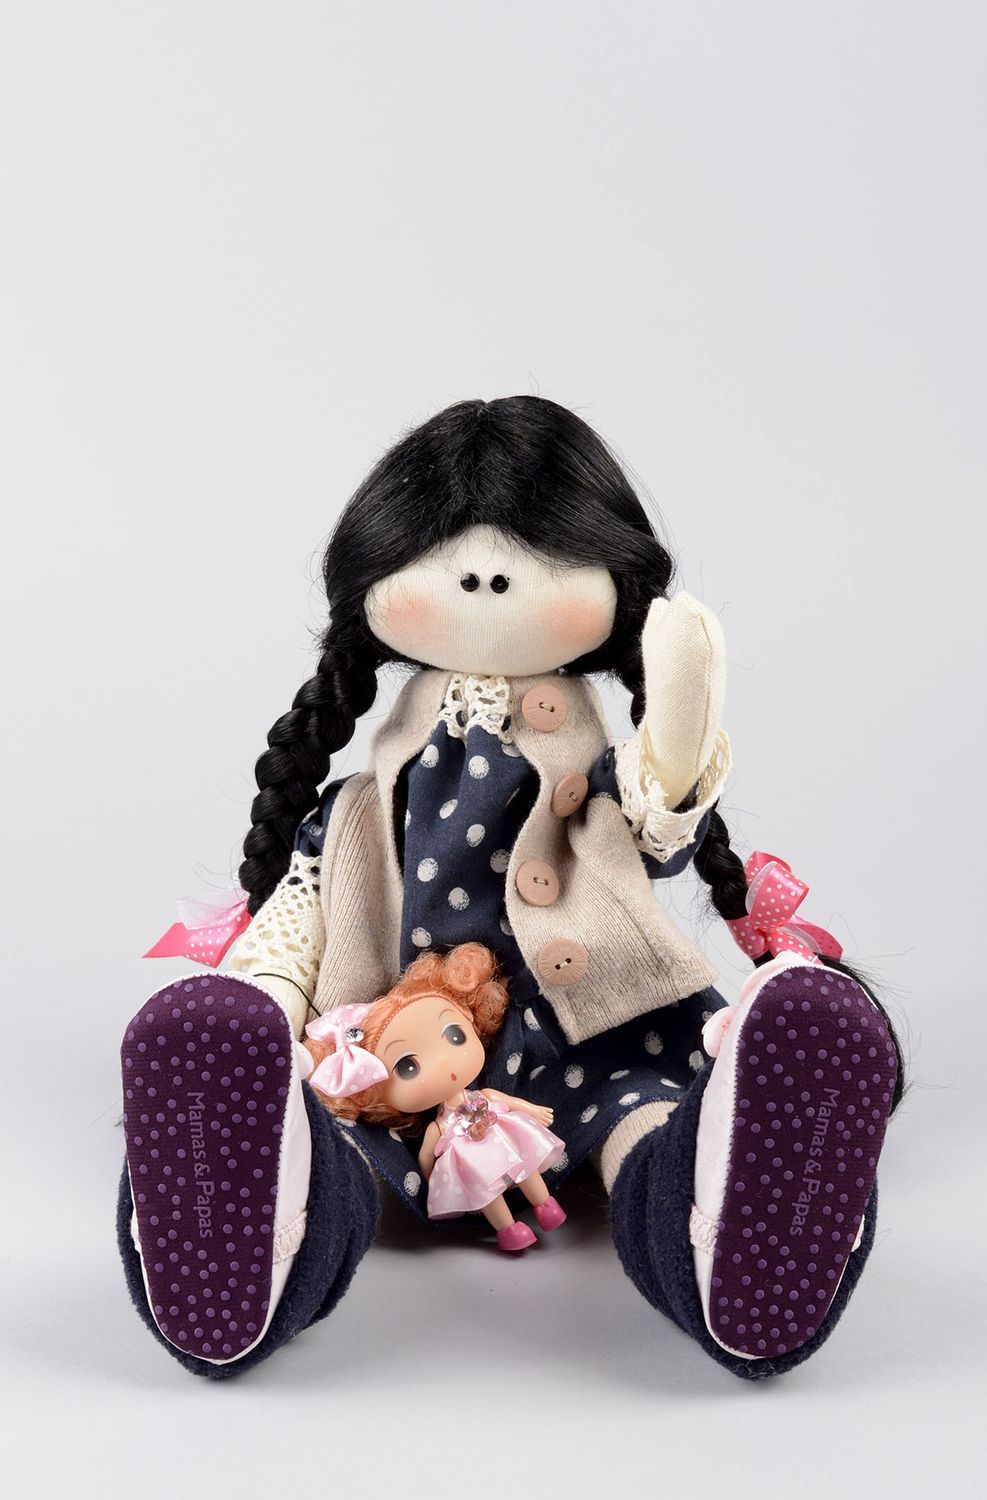 Handmade soft doll girl doll toys for kids nursery decor gifts for children photo 4